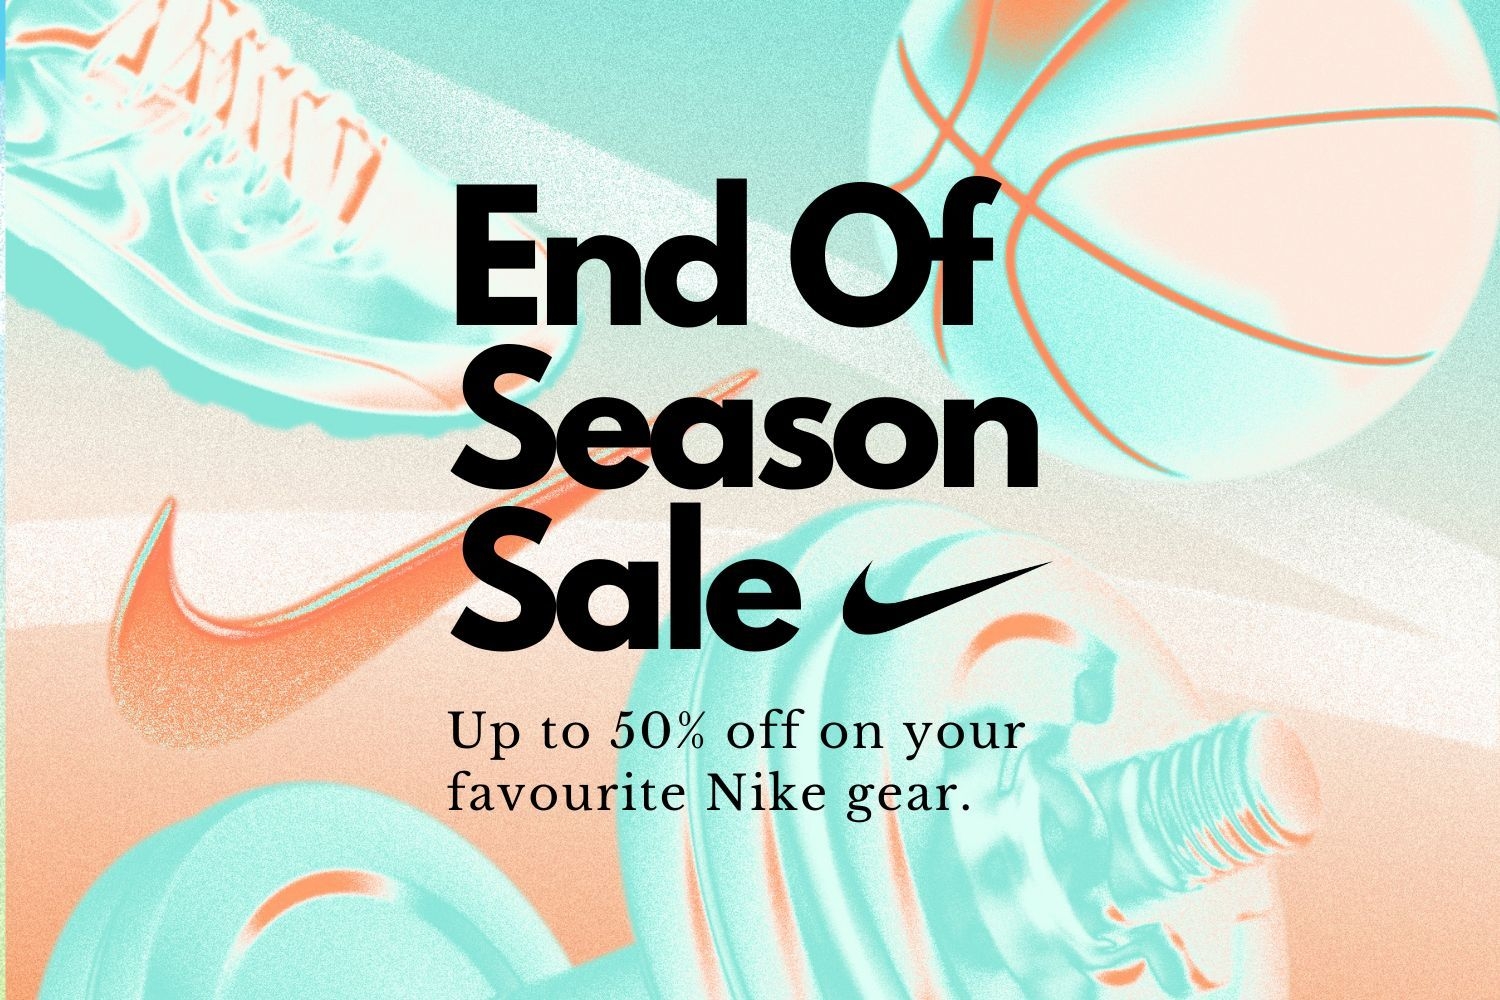 Nike komt met hoge kortingen in End of Season sale